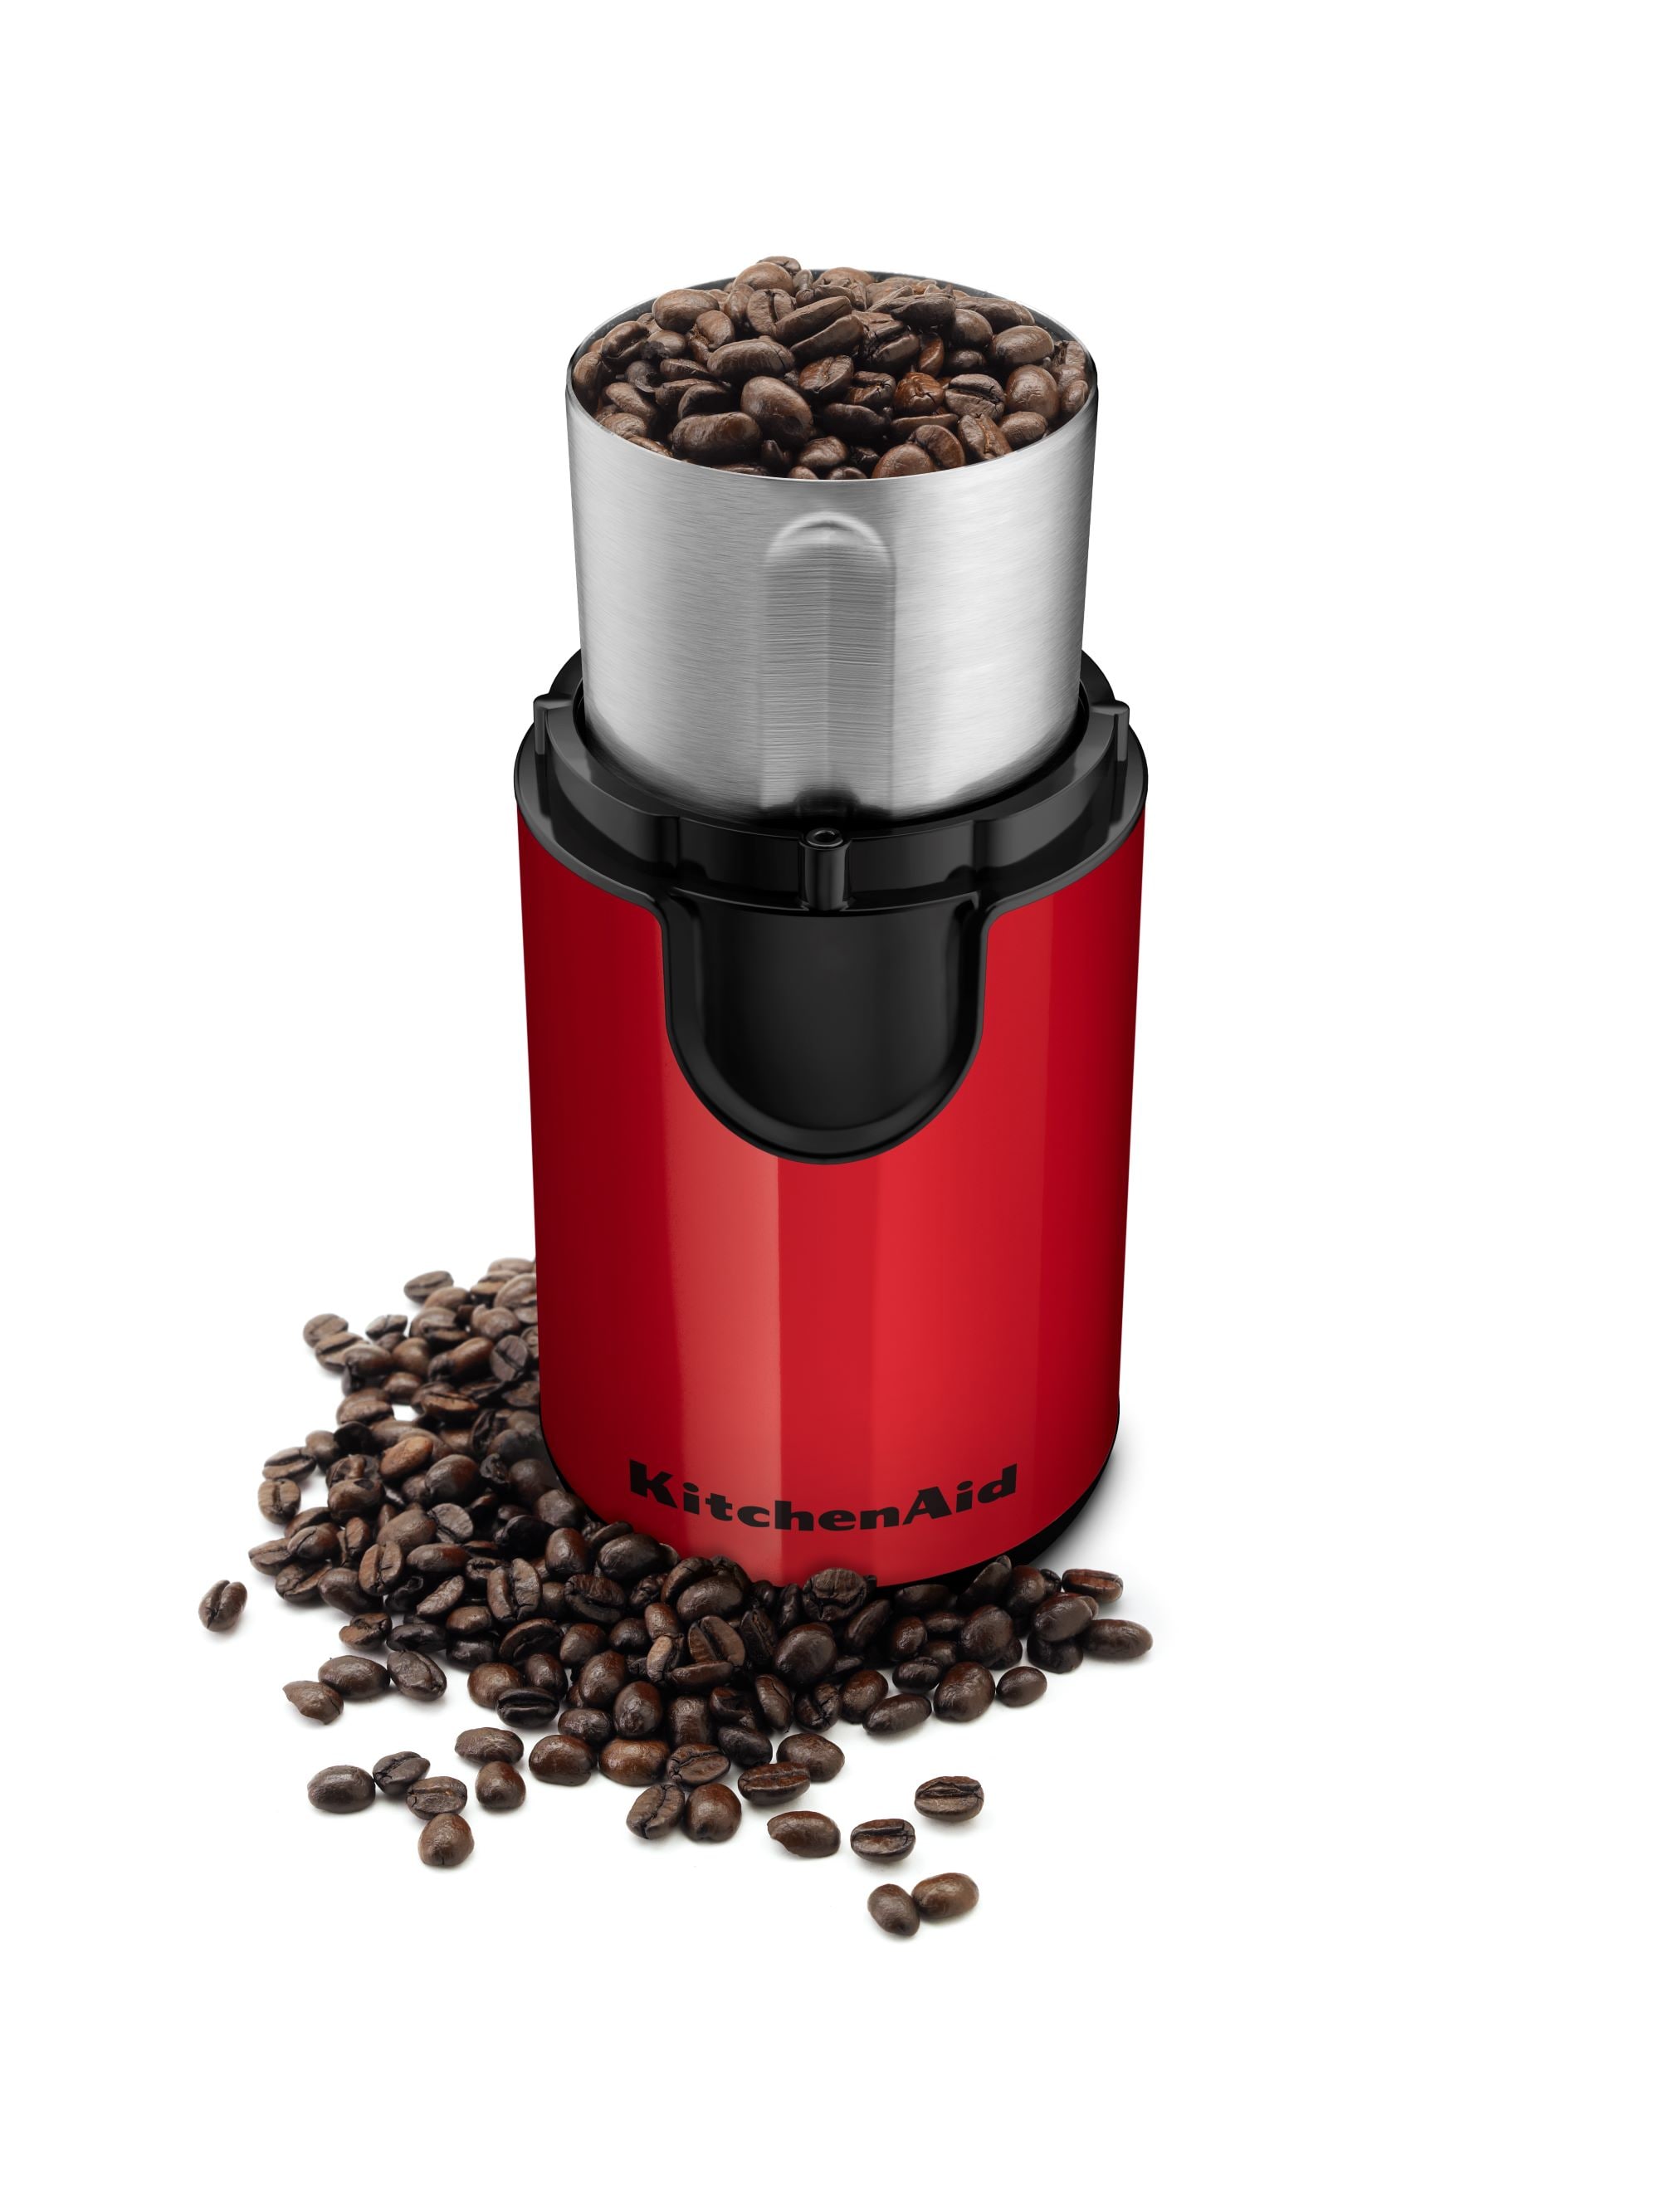 KitchenAid BCG111ER Coffee Grinder, Empire Red - 4 oz bottle